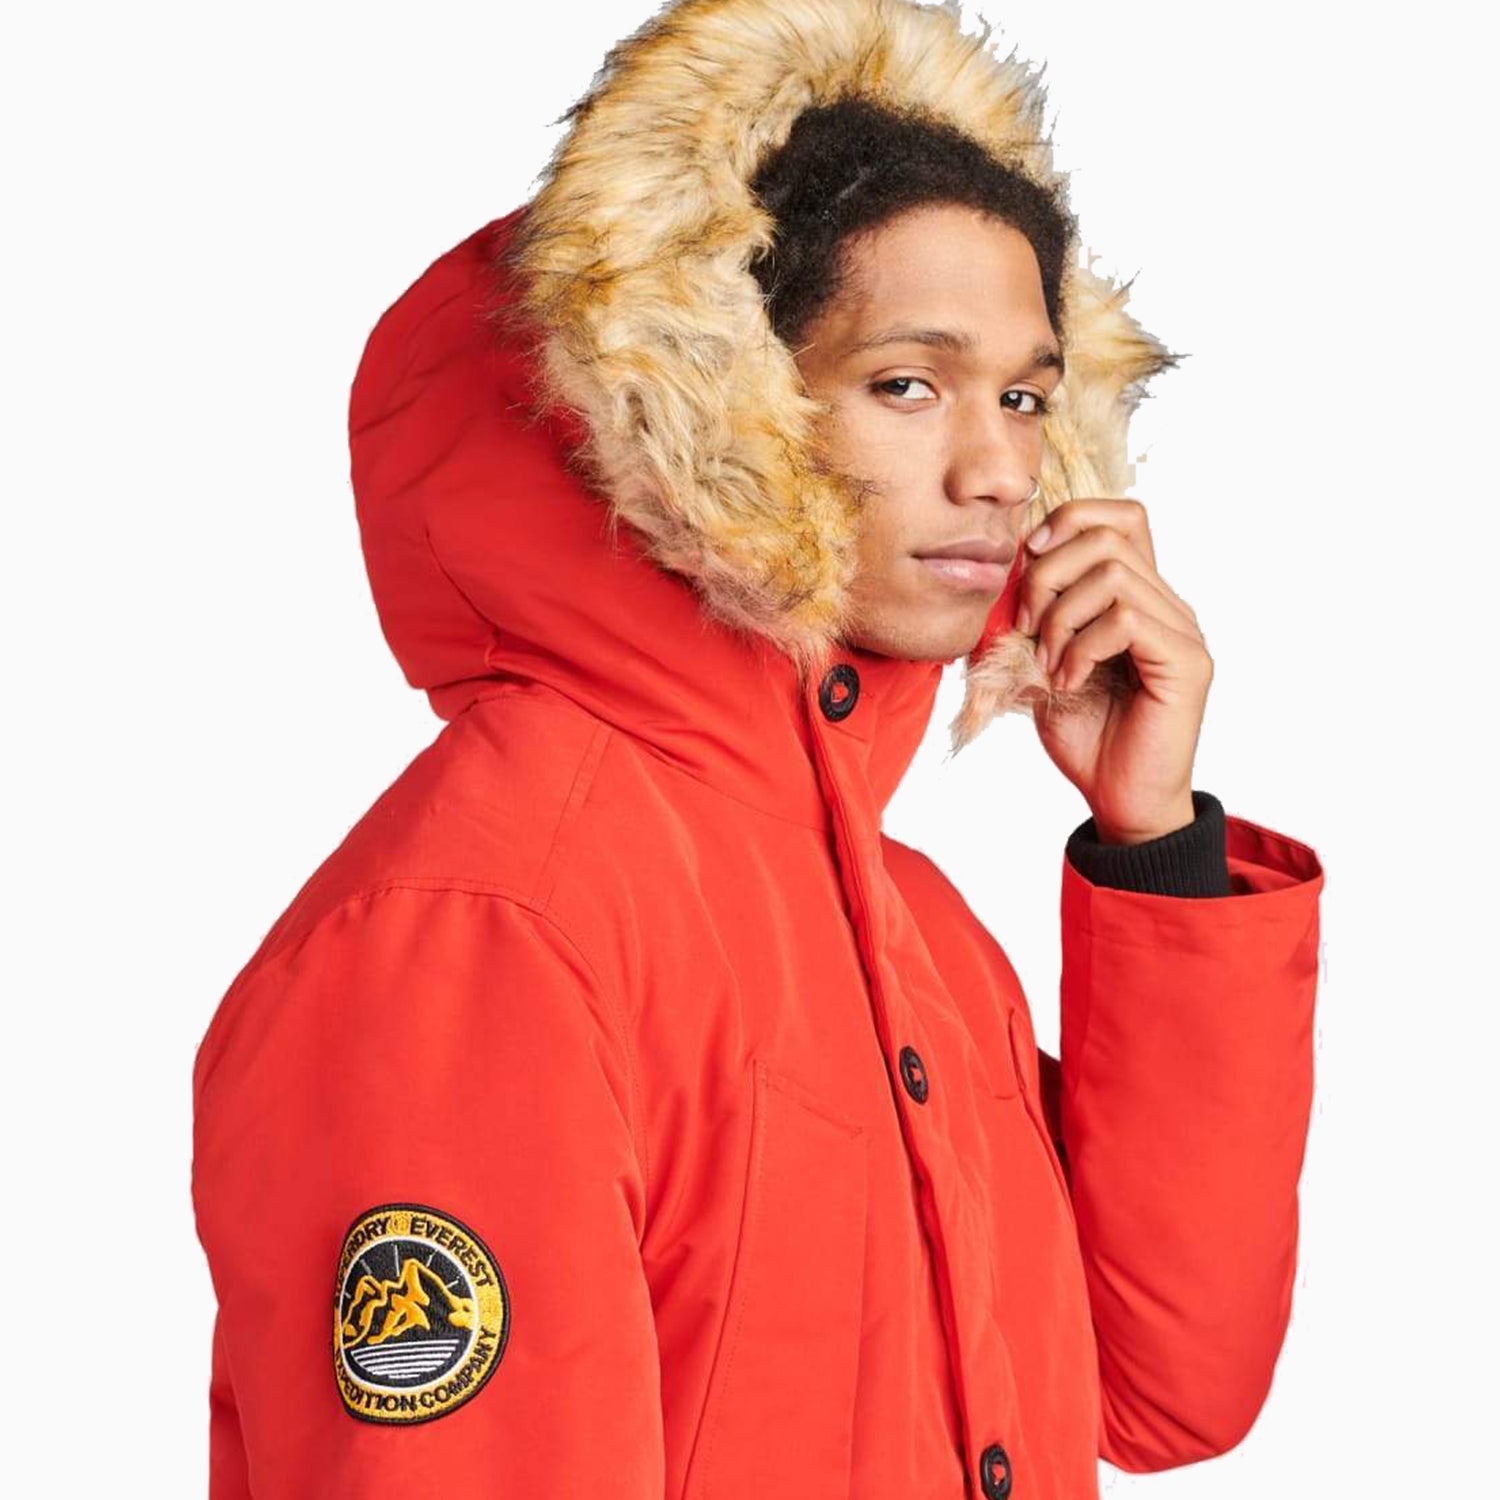 SUPERDRY | Men's Everest Parka Jacket - Color: High Risk Red, Orange - Tops and Bottoms USA -